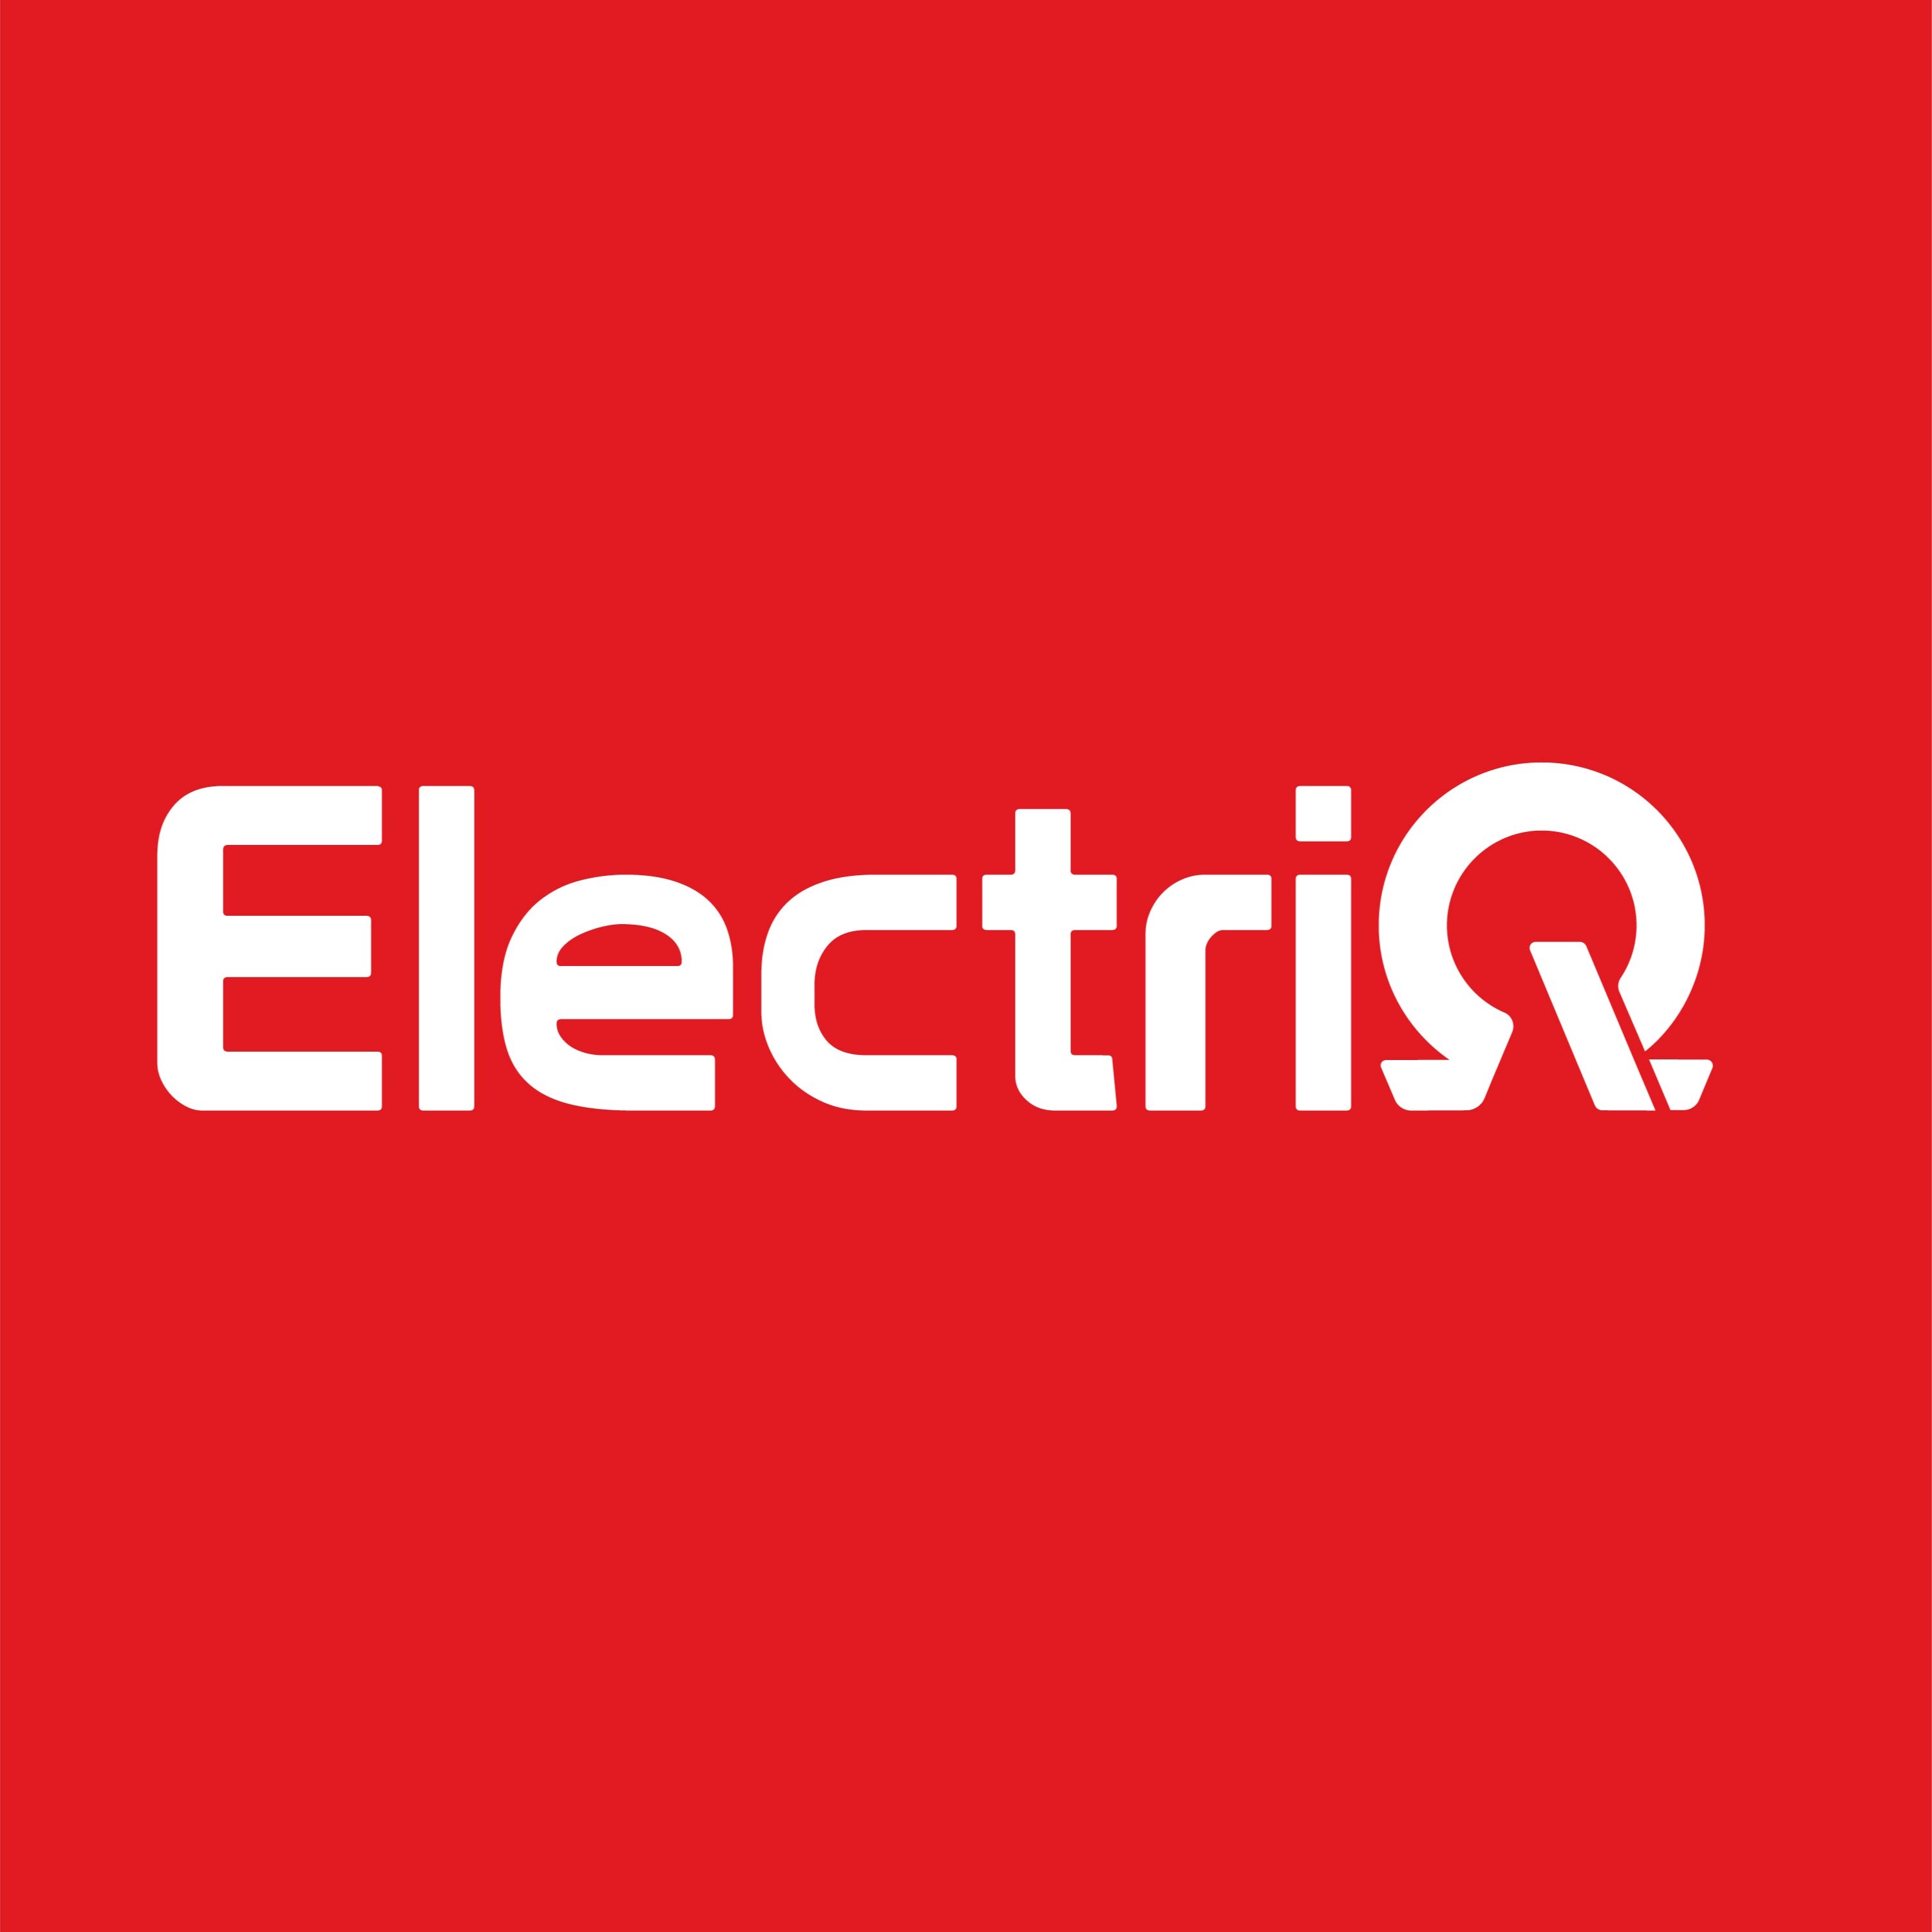 Electriq, Online Shop | Shopee Philippines